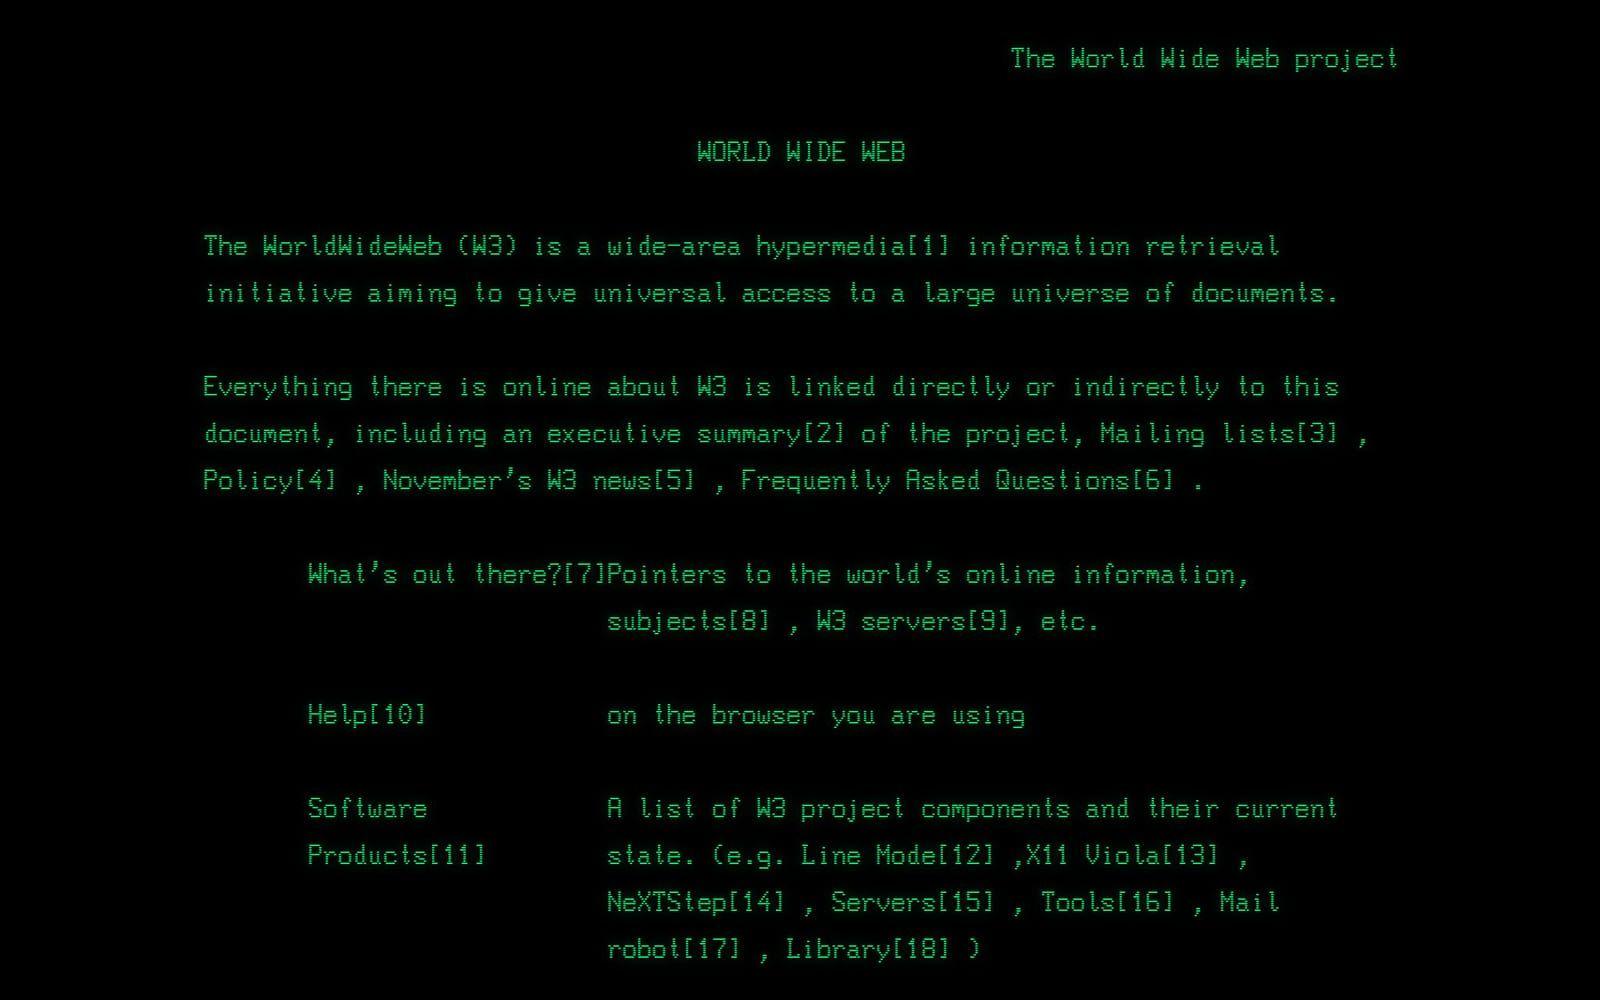 <strong>FÖRSTA WWW-SIDAN.</strong> Den allra första webbsidan postades den 6 augusti 1991 och innehöll information om WWW och hypertext. Sidan lades upp av  Tim Berners-Lee som brukar få äran för internets tillkomst. Den ursprungliga url:en var och är än idag <a href="http://info.cern.ch/hypertext/WWW/TheProject.html" target="_blank">http://info.cern.ch/hypertext/WWW/TheProject.html</a>, men det ska tilläggas att sidan som syns idag återspeglar en uppdaterad version från cirka 1992.